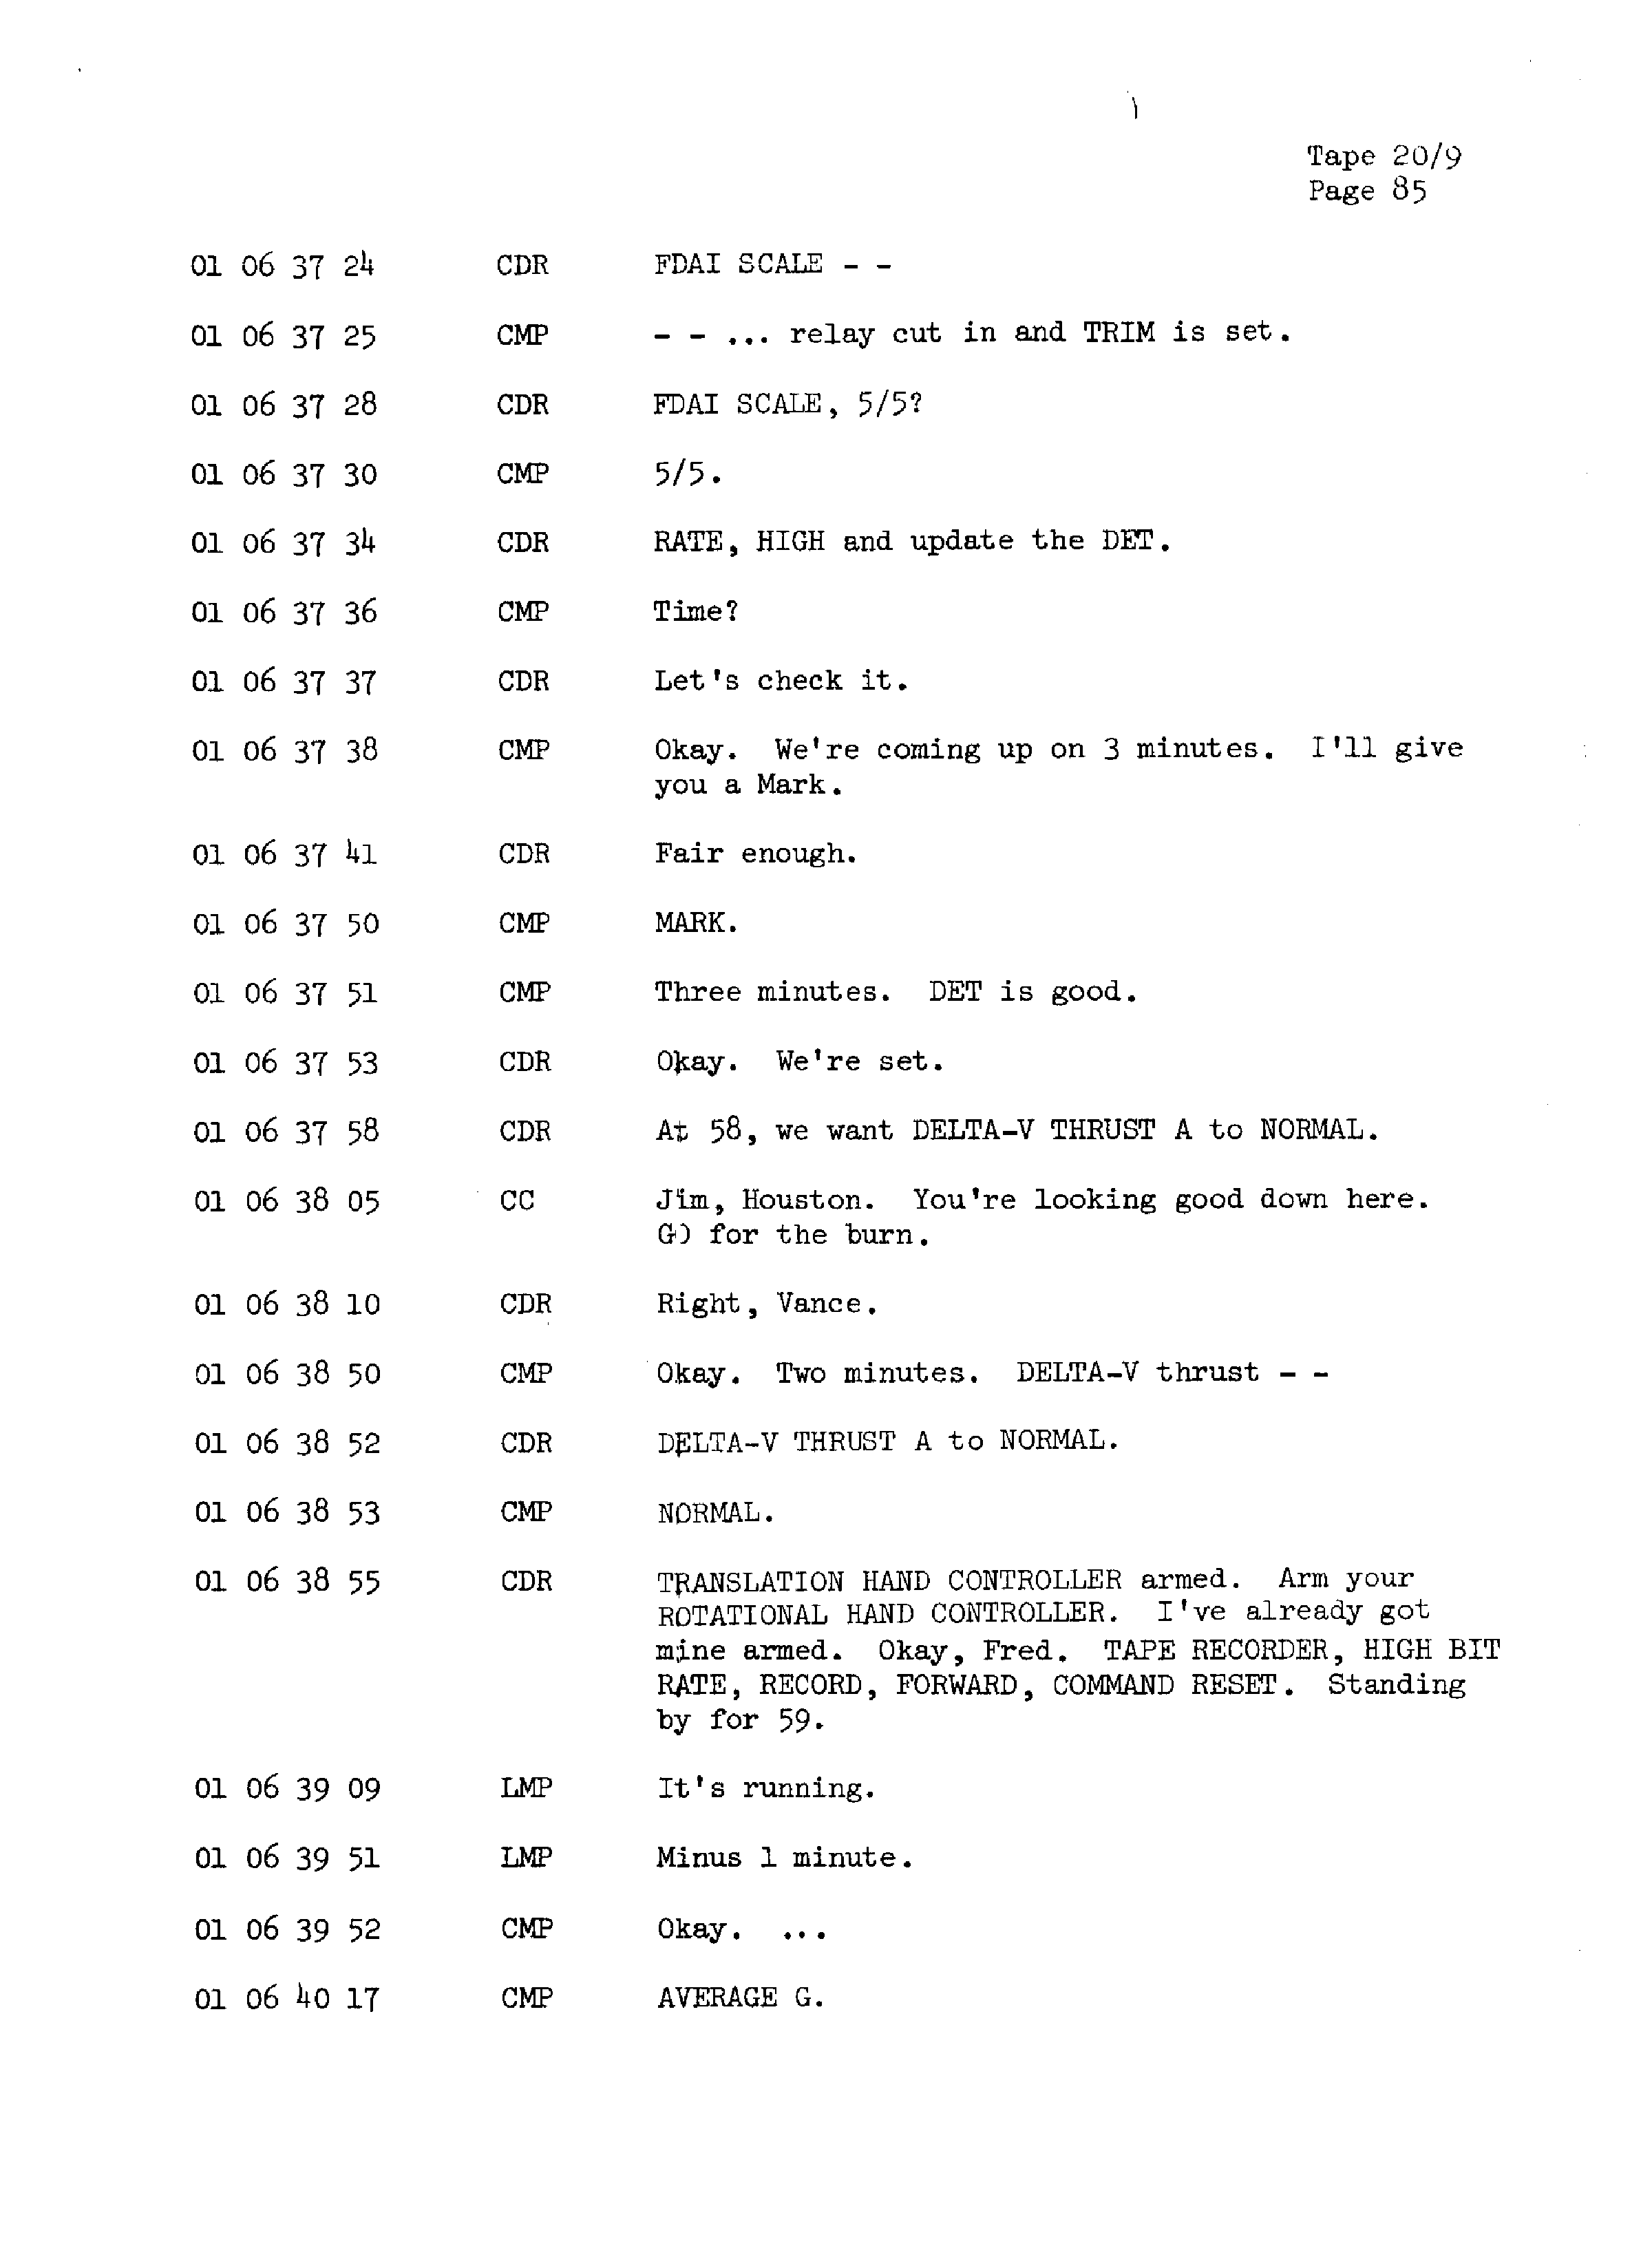 Page 92 of Apollo 13’s original transcript